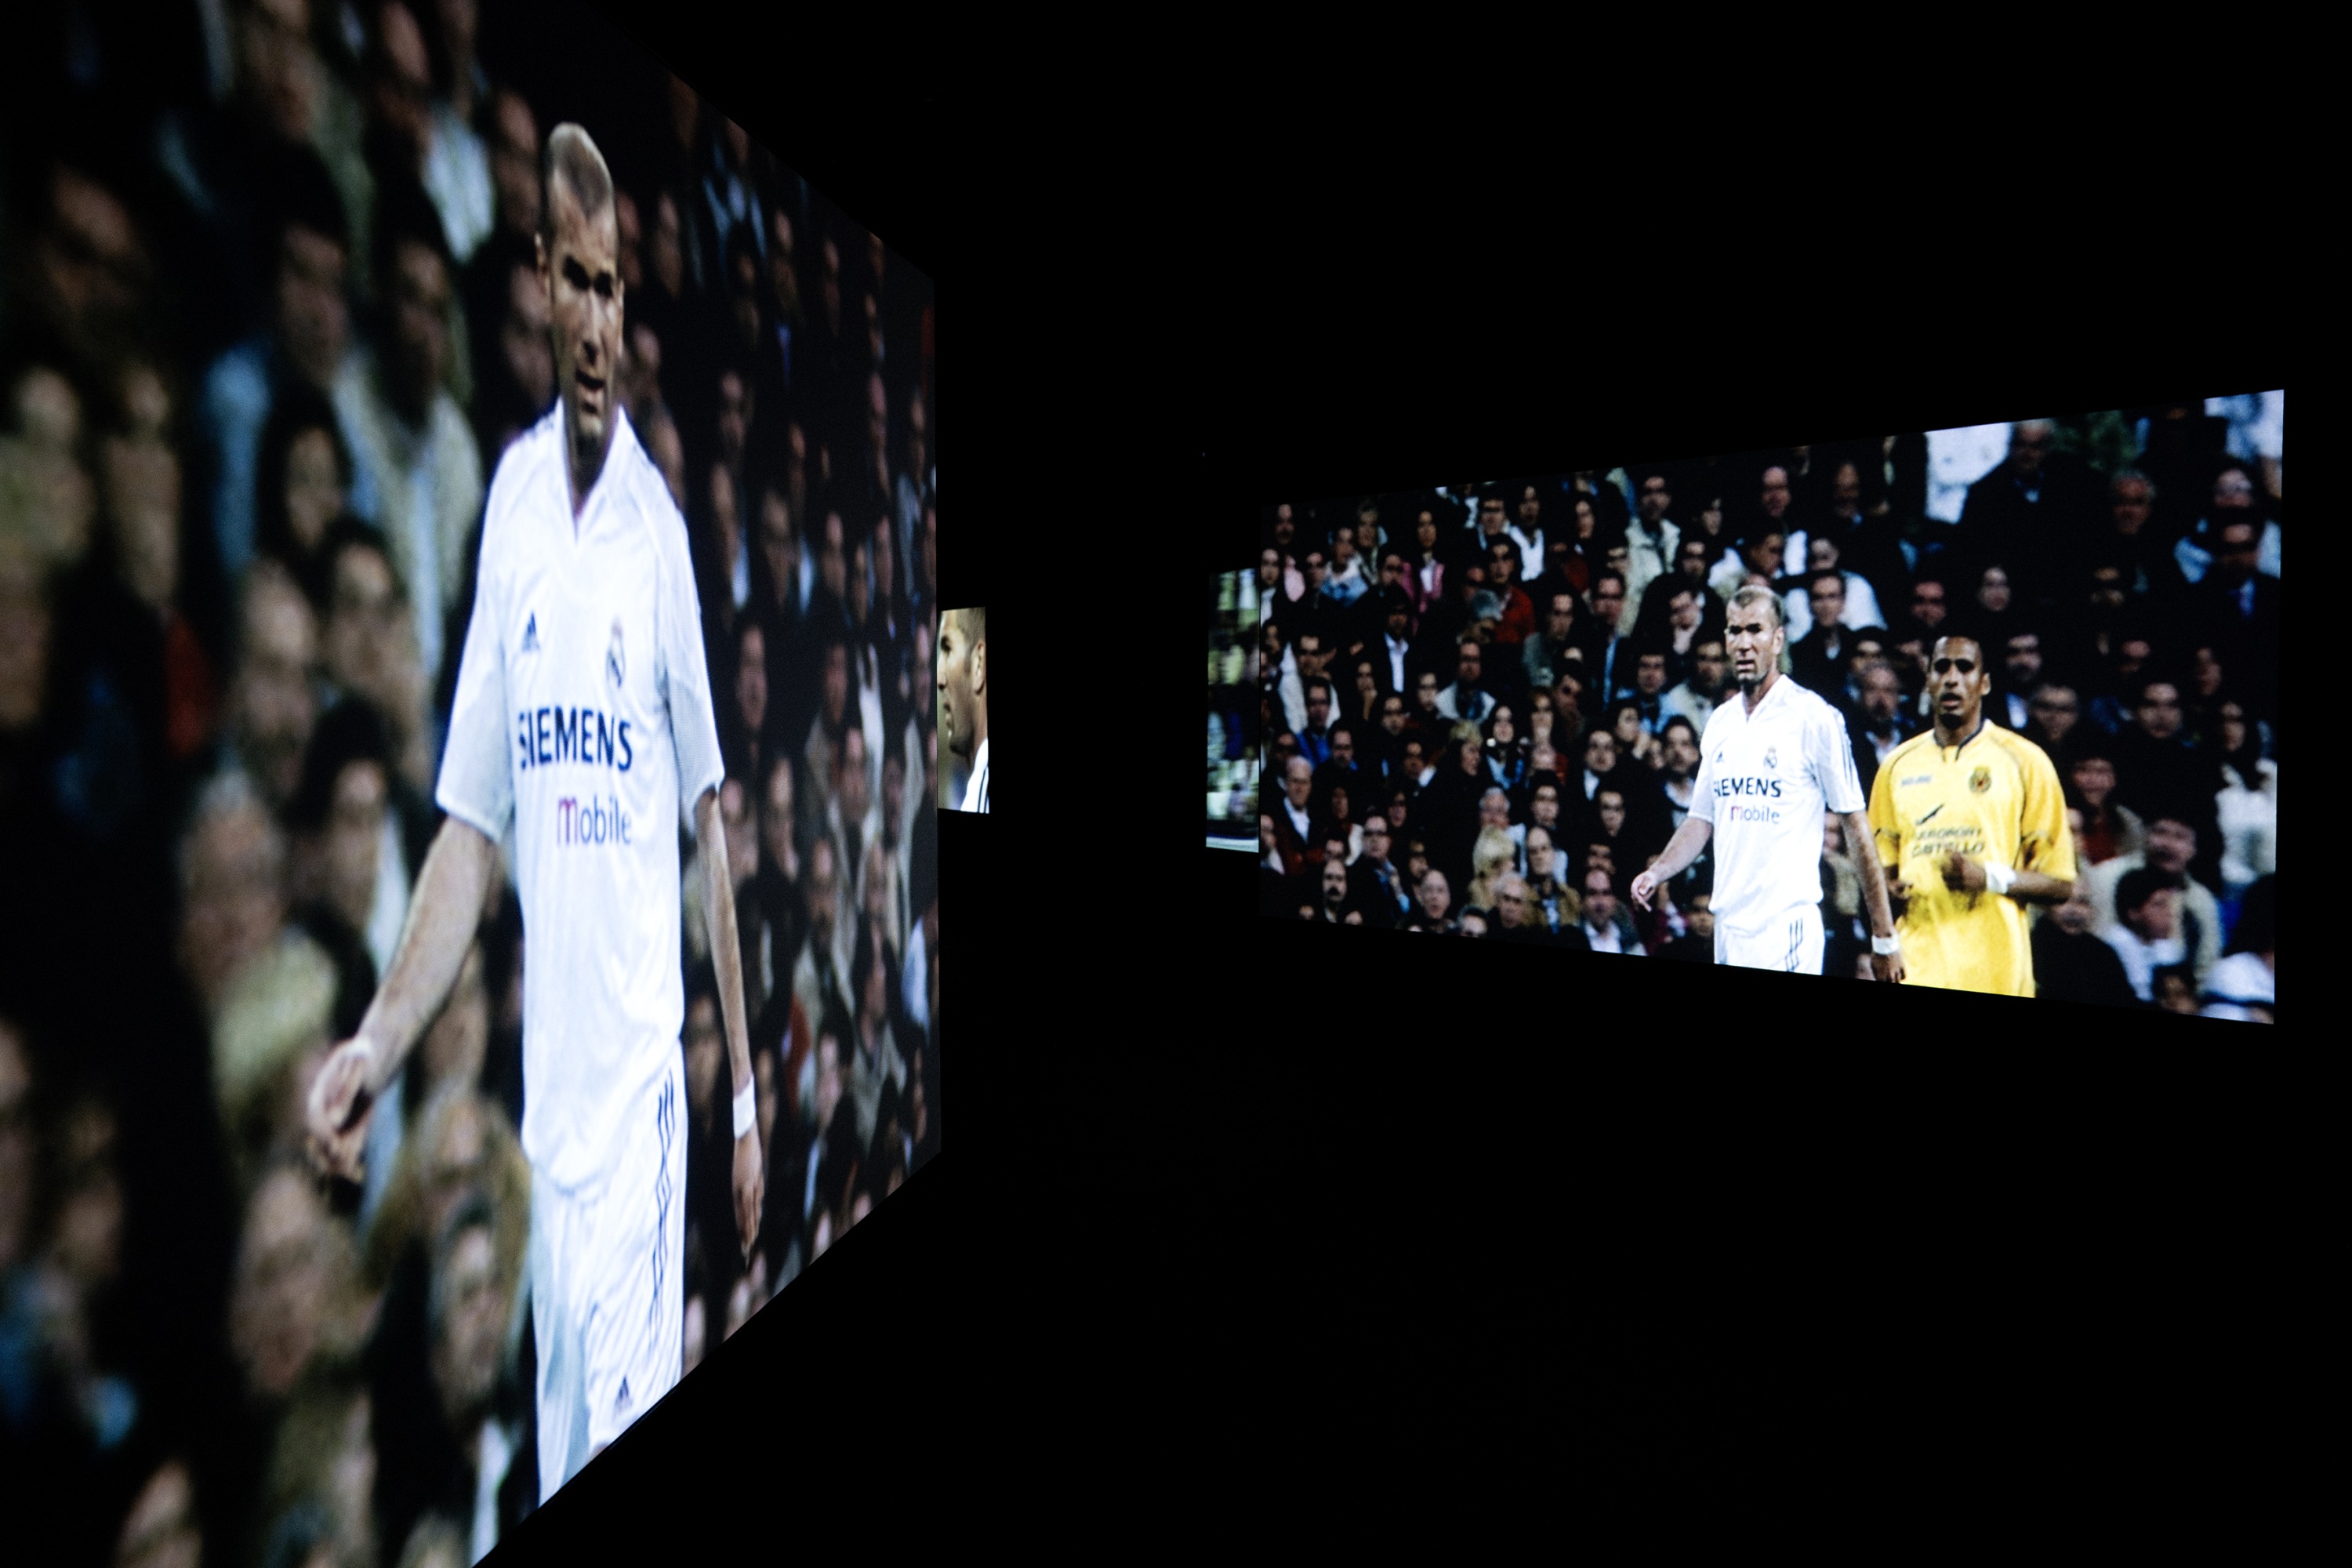 Zidane: A 21st Century Portrait Douglas Gordon & Philippe Parreno